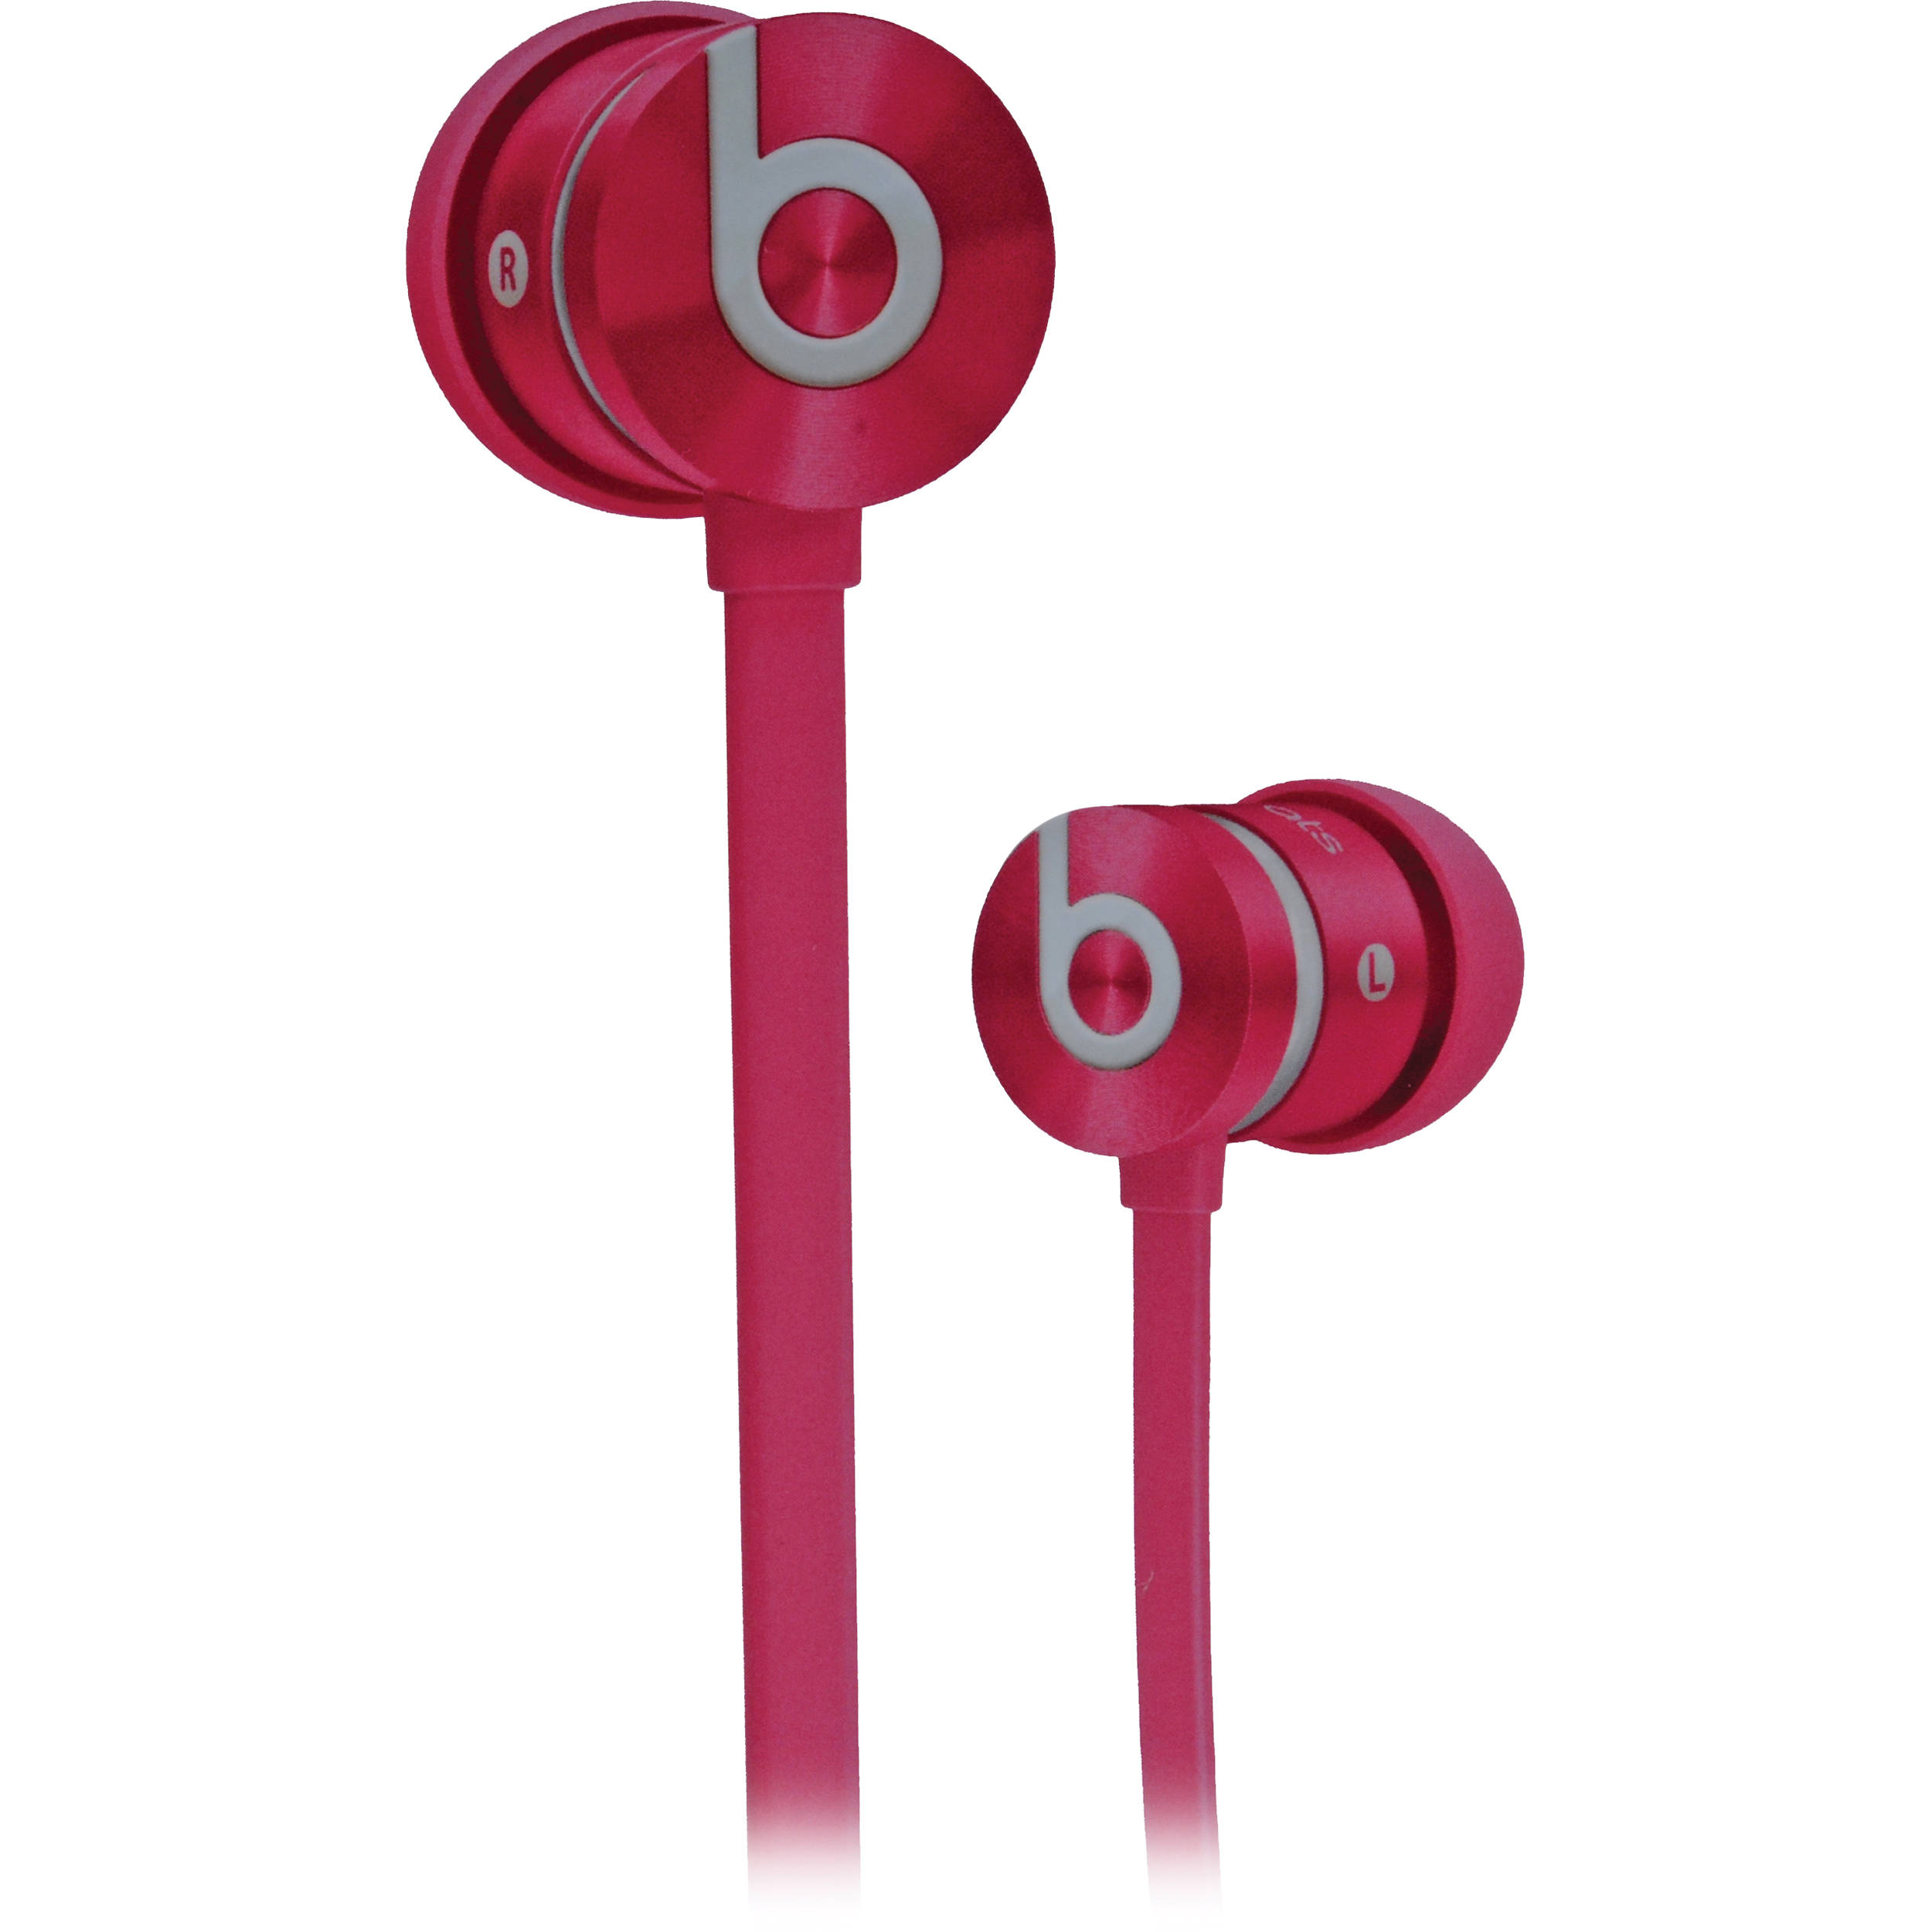 pink beats earphones